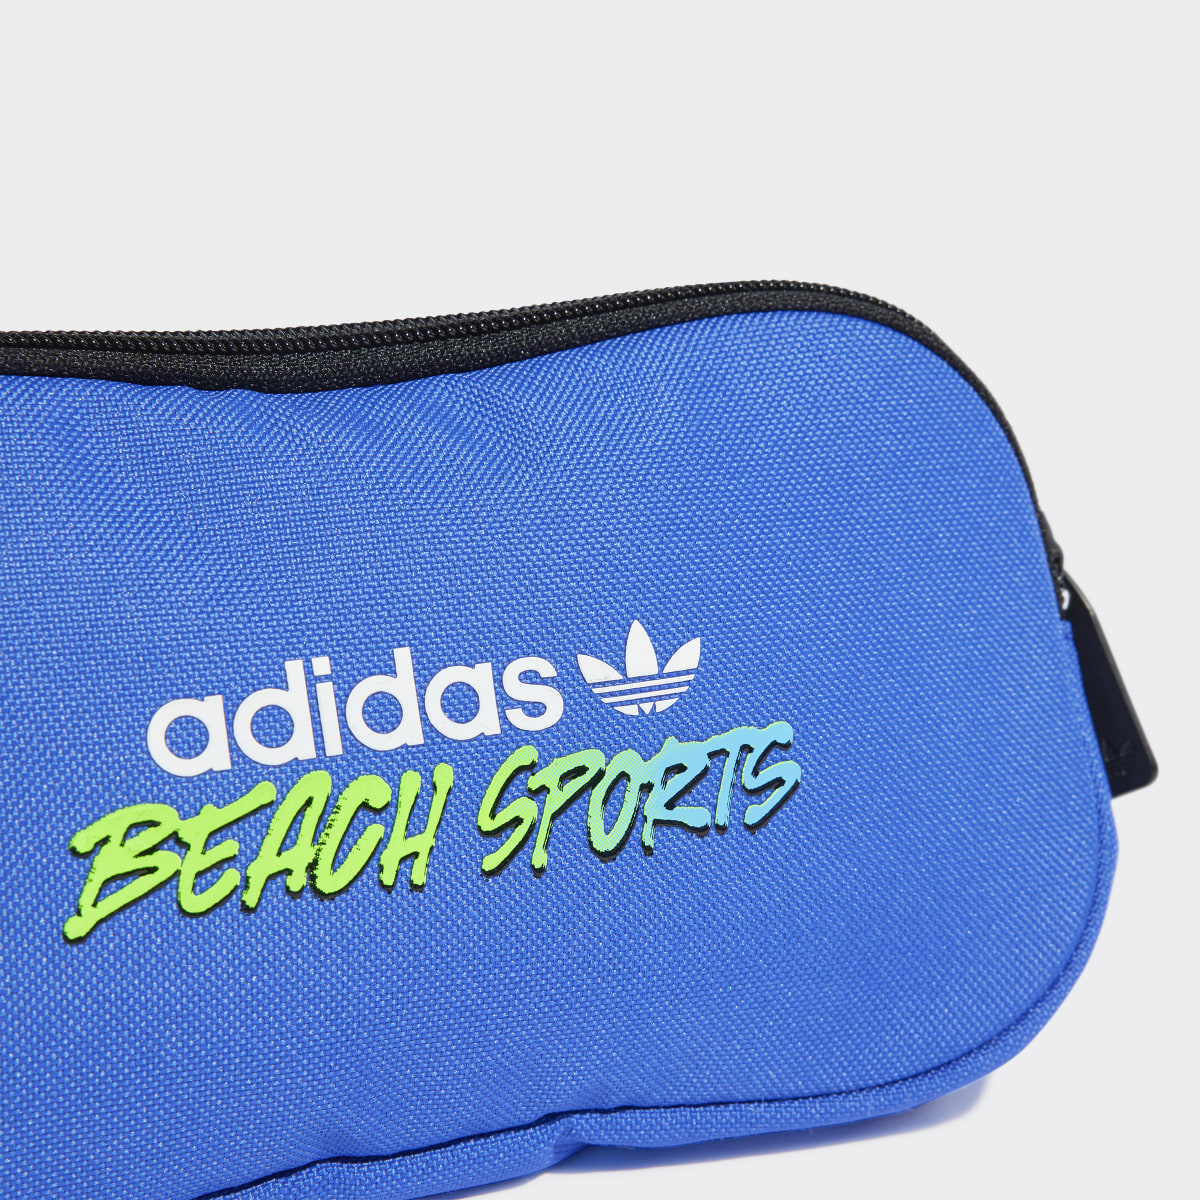 Adidas Marsupio Beach Sports. 6